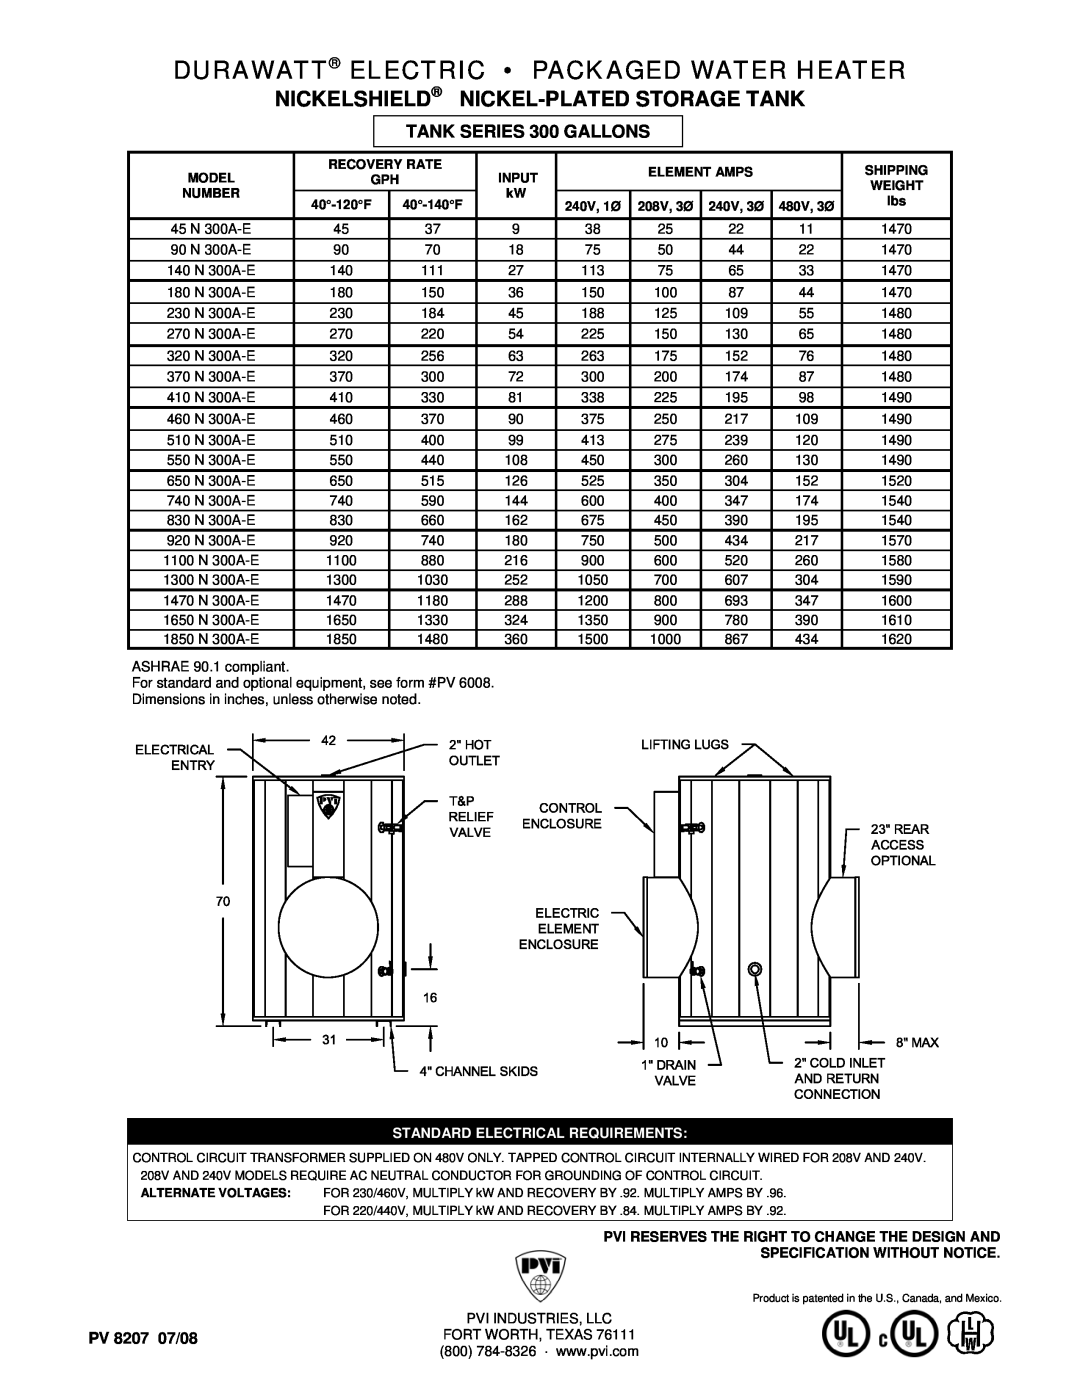 PVI Industries 45N300A-E dimensions Durawatt Electric Packaged Water Heater, Nickelshield Nickel-Platedstorage Tank 